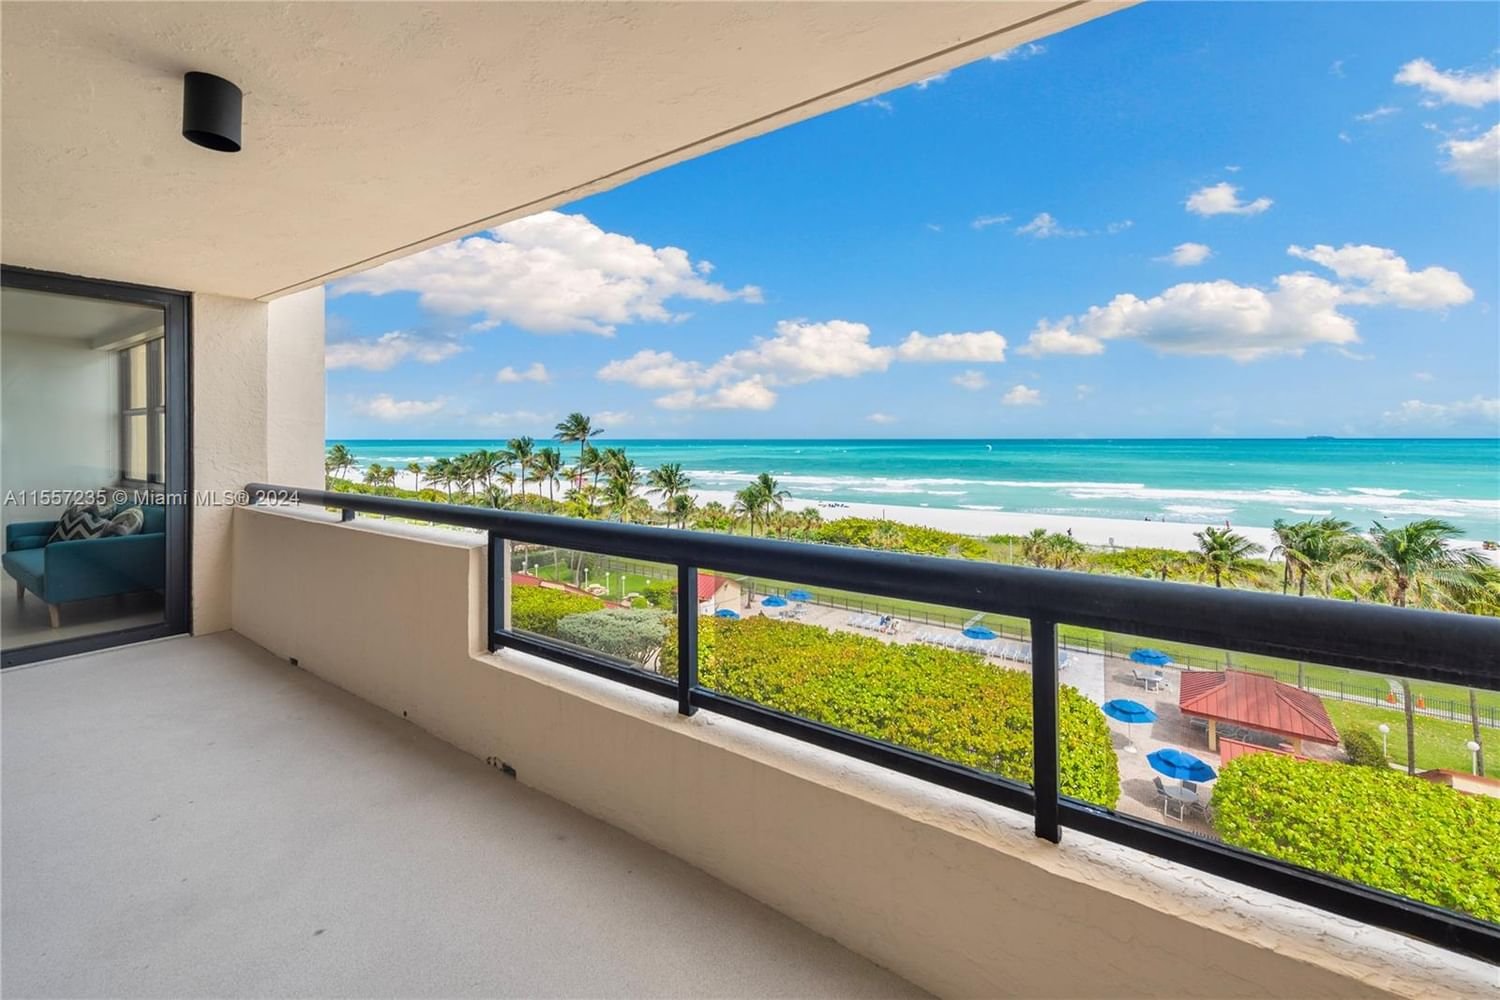 Real estate property located at 2555 Collins Ave #709, Miami-Dade County, CLUB ATLANTIS CONDO, Miami Beach, FL